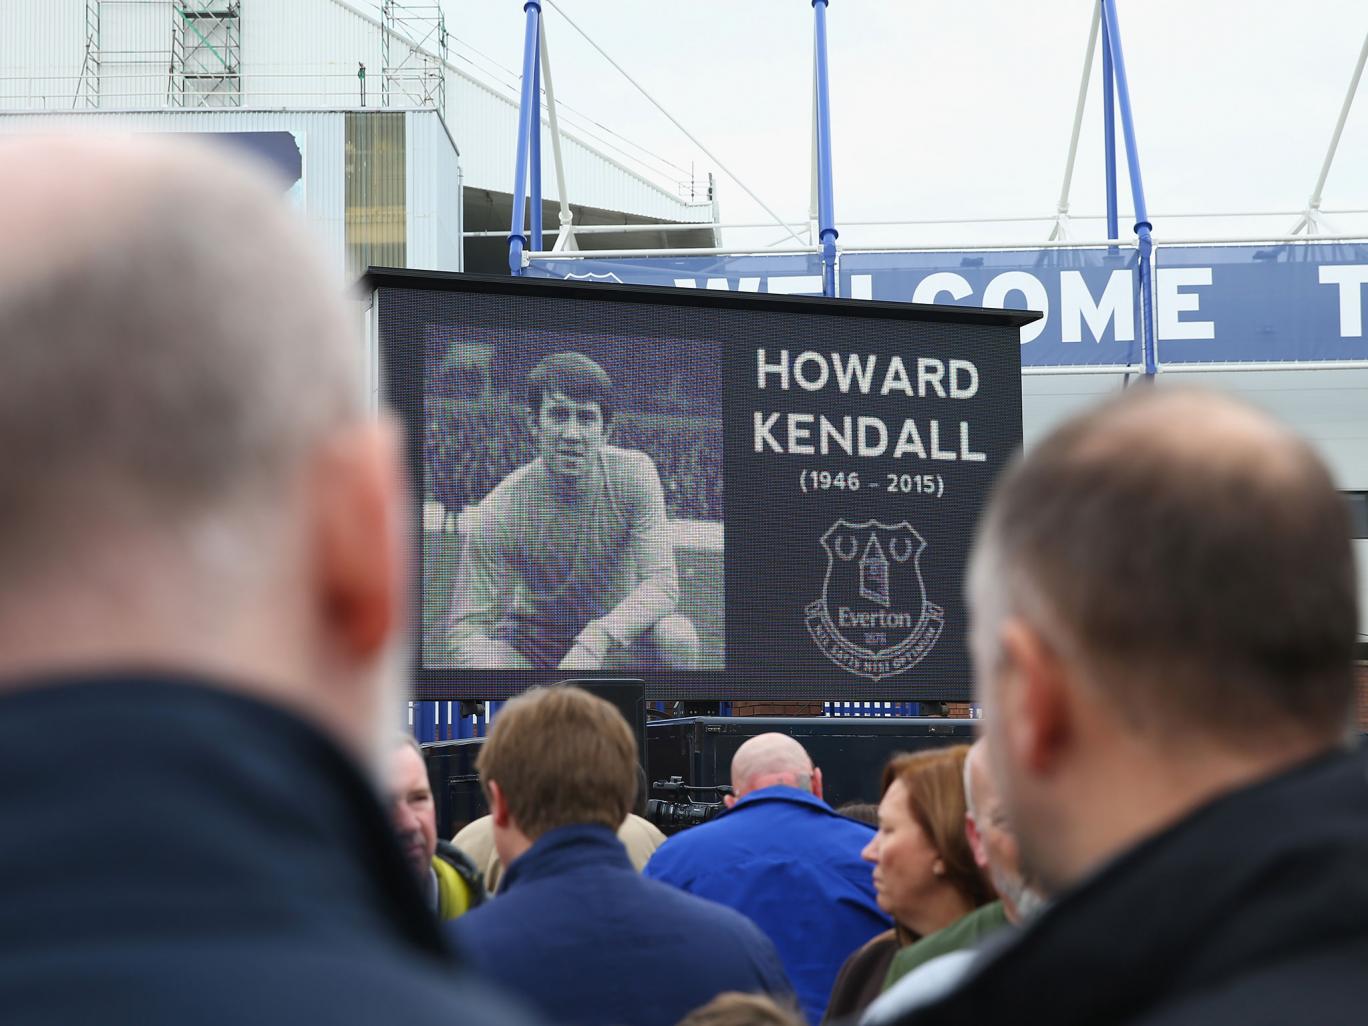 گزارش تصویری؛ حضور چهره های مطرح فوتبال جزیره در مراسم تدفین هاوارد کندال